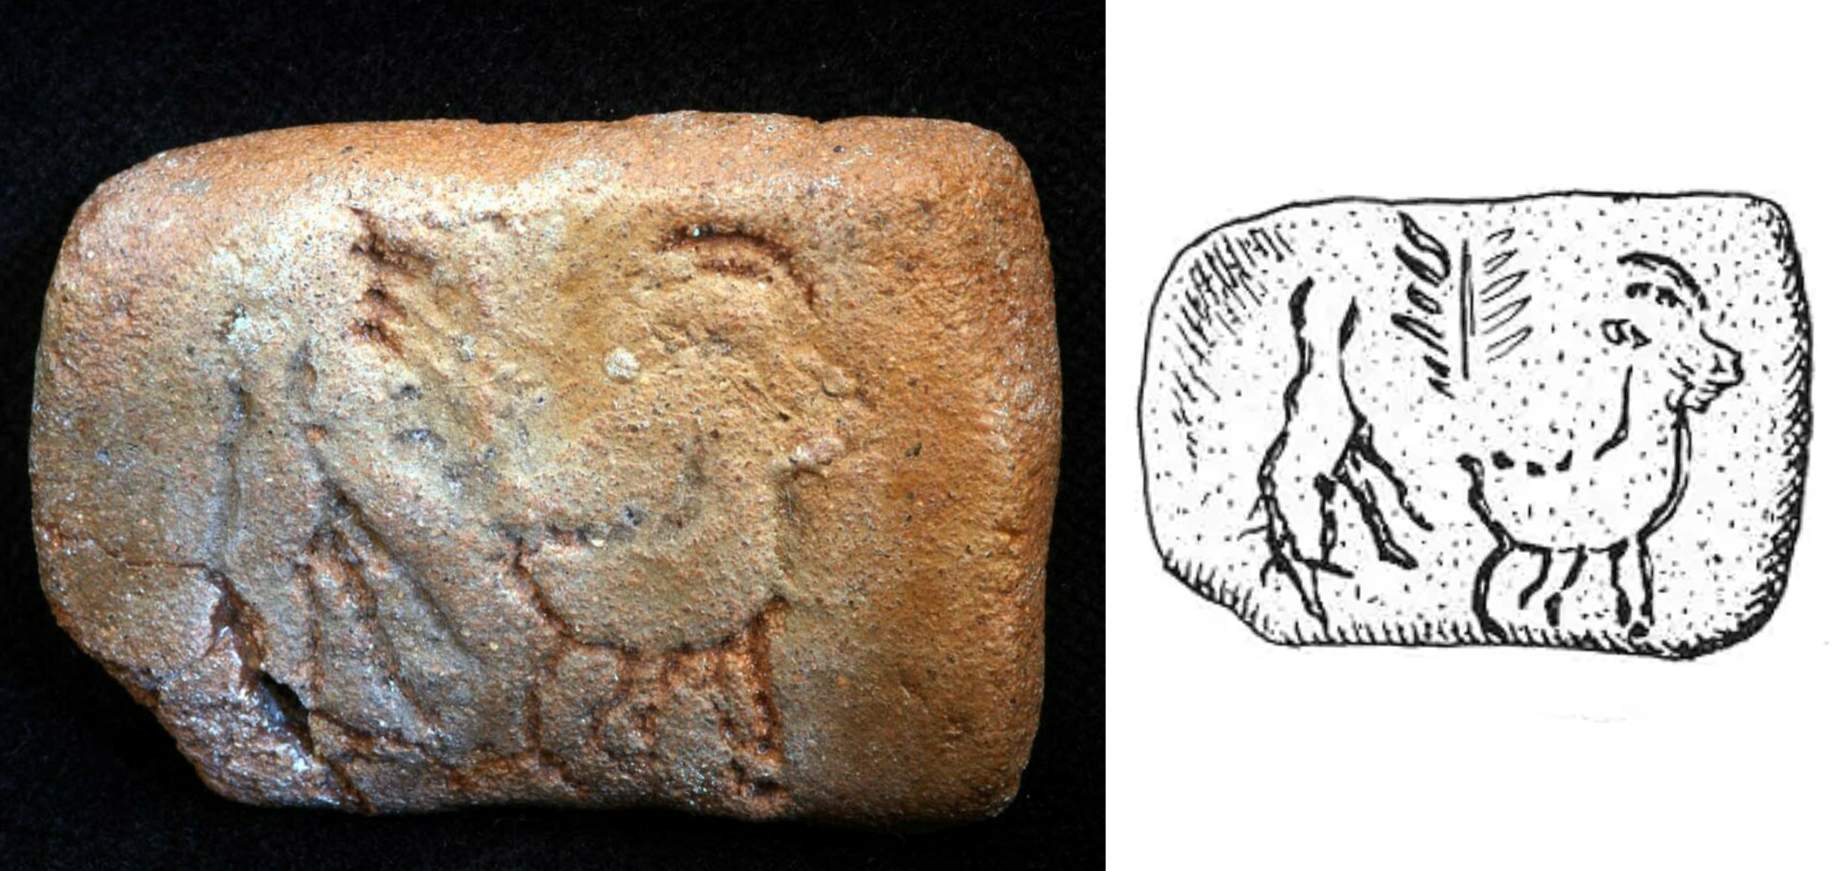 Một trong những tấm bảng có hình hai con vật (dê?) Và một cái cây, gợi ý một sự hy sinh để kỷ niệm sự trở lại của cuộc sống mới, vào cuối thiên niên kỷ thứ sáu đến c. 5300-5000